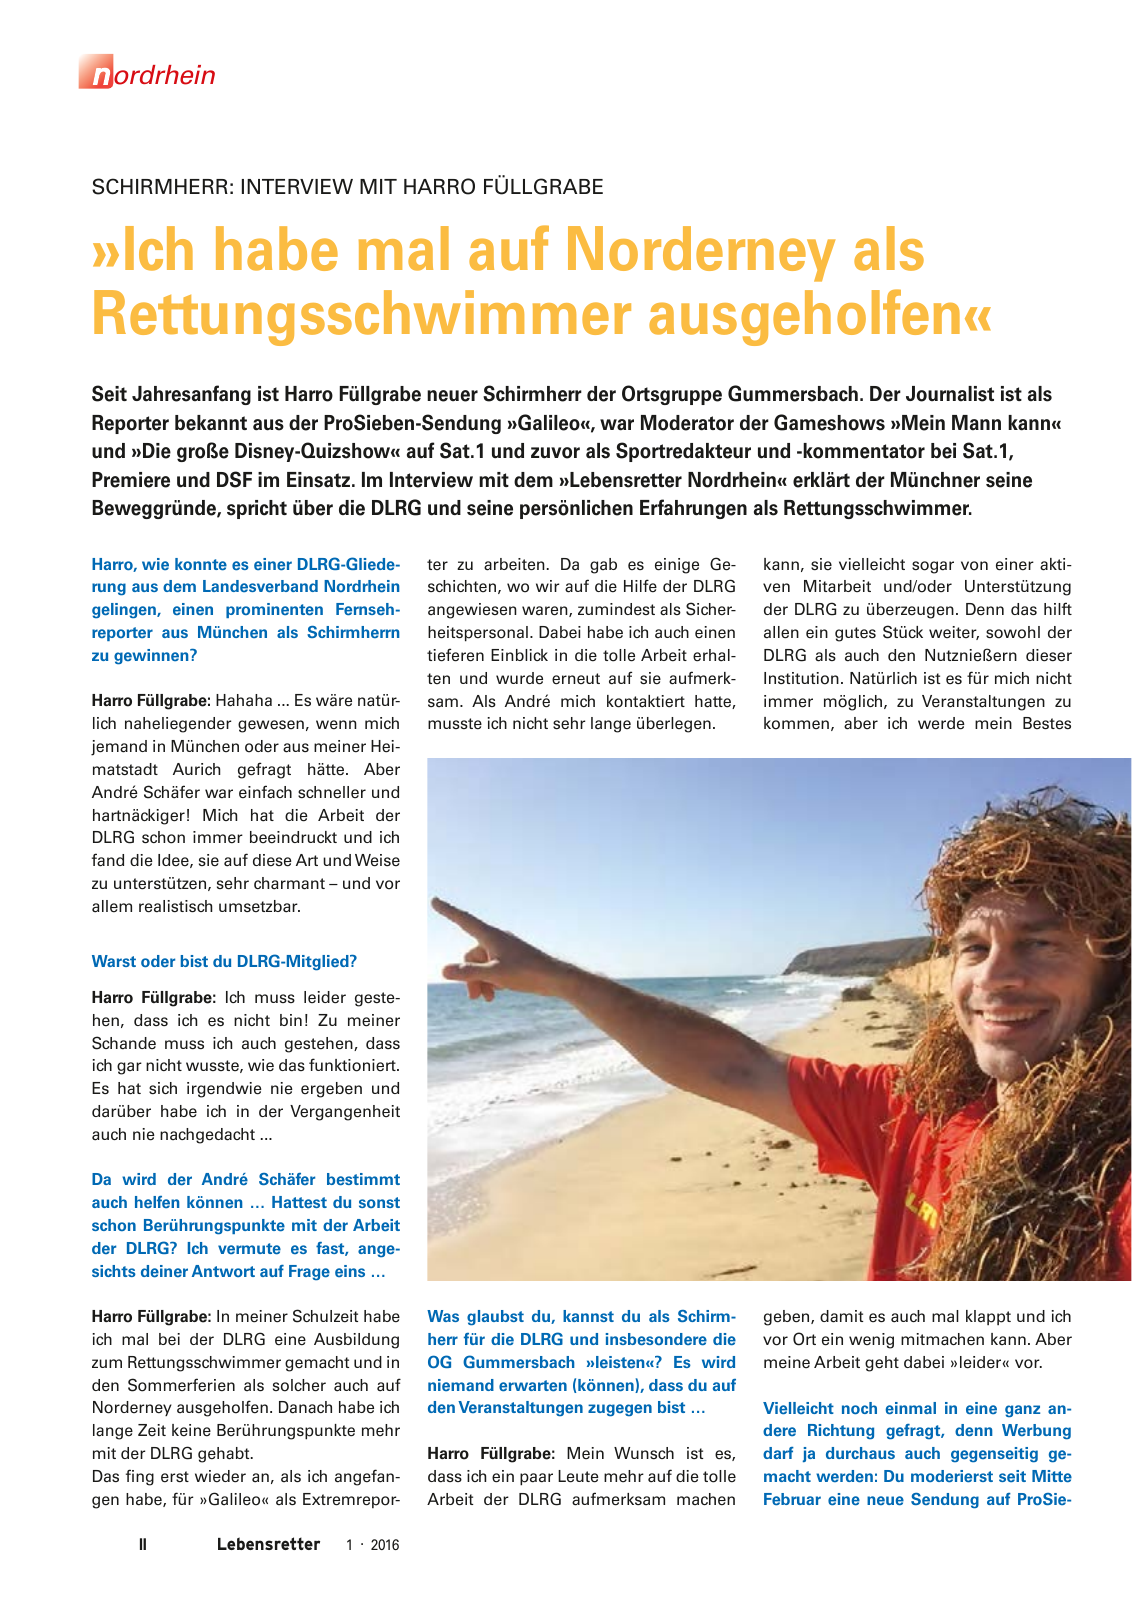 Vorschau Lebensretter 1/2016 - Regionalausgabe Nordrhein Seite 4